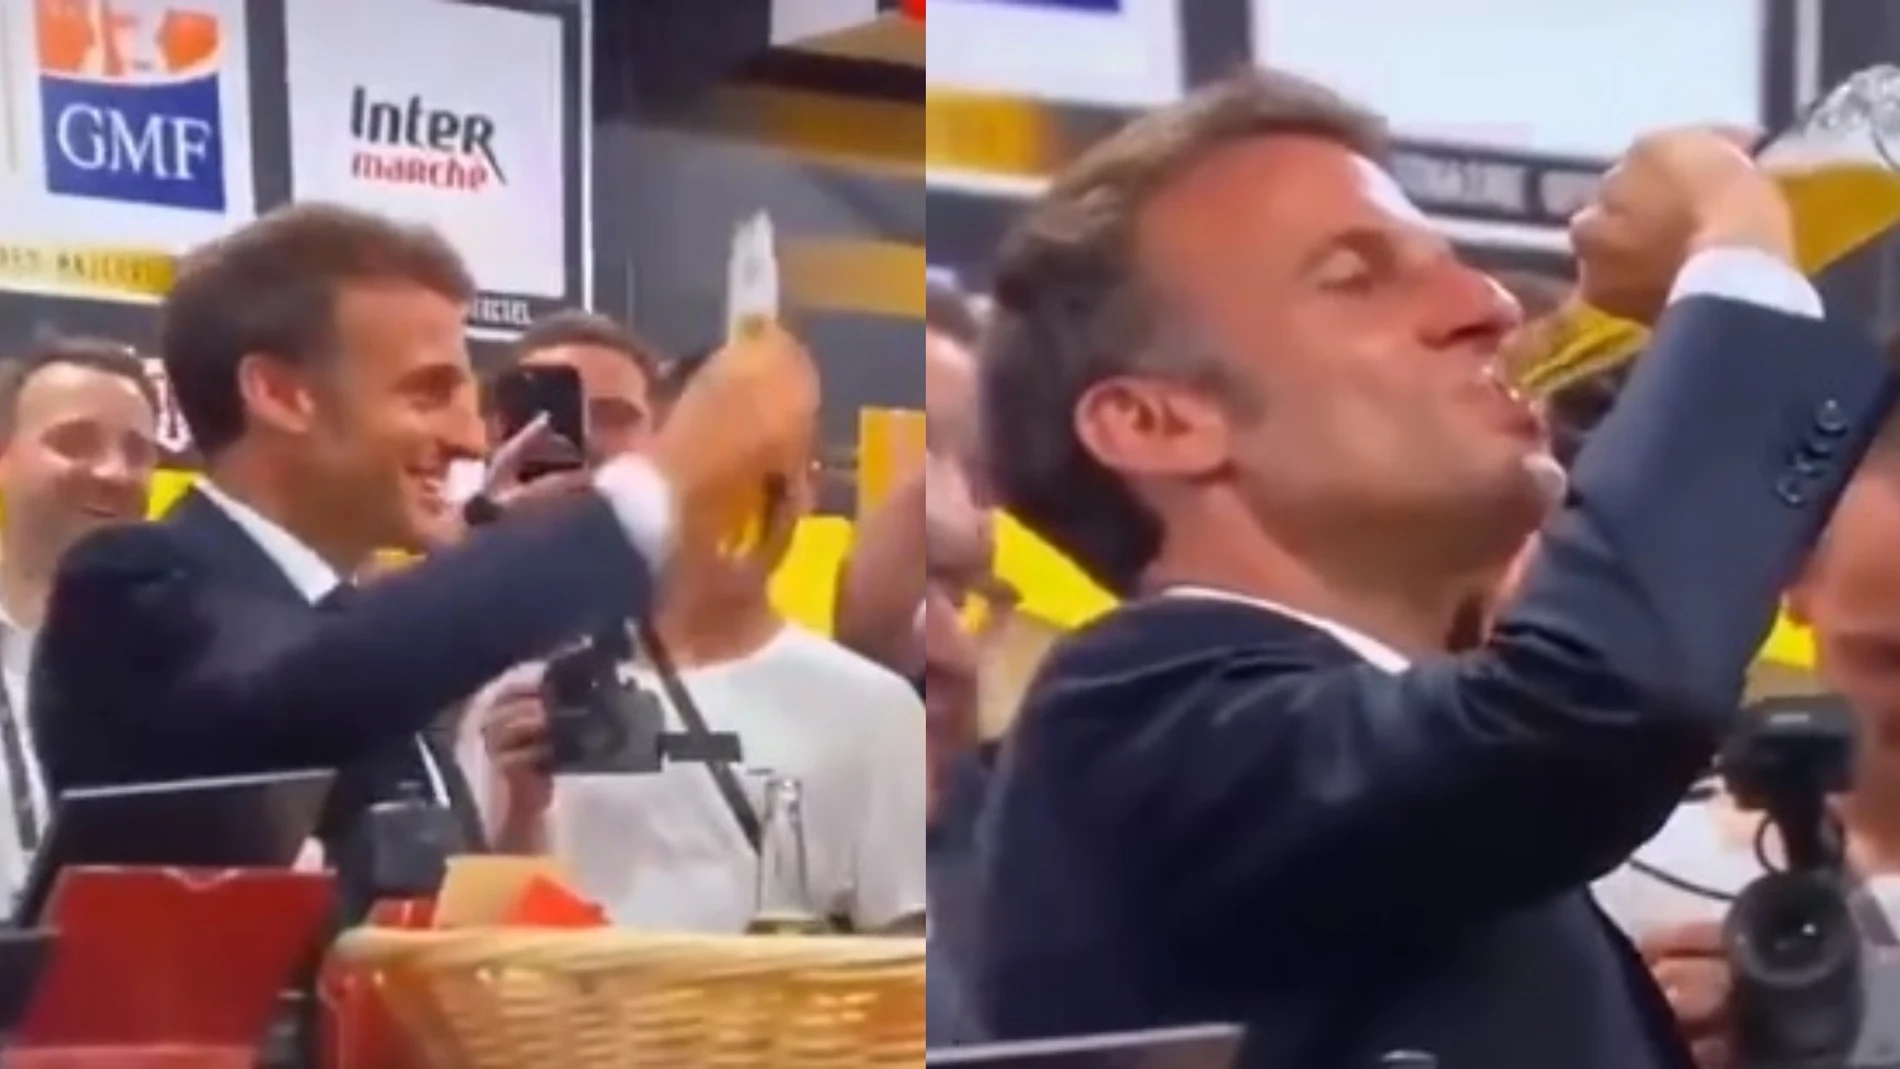 Emmanuel Macron, en el momento de beberse una cerveza de trago